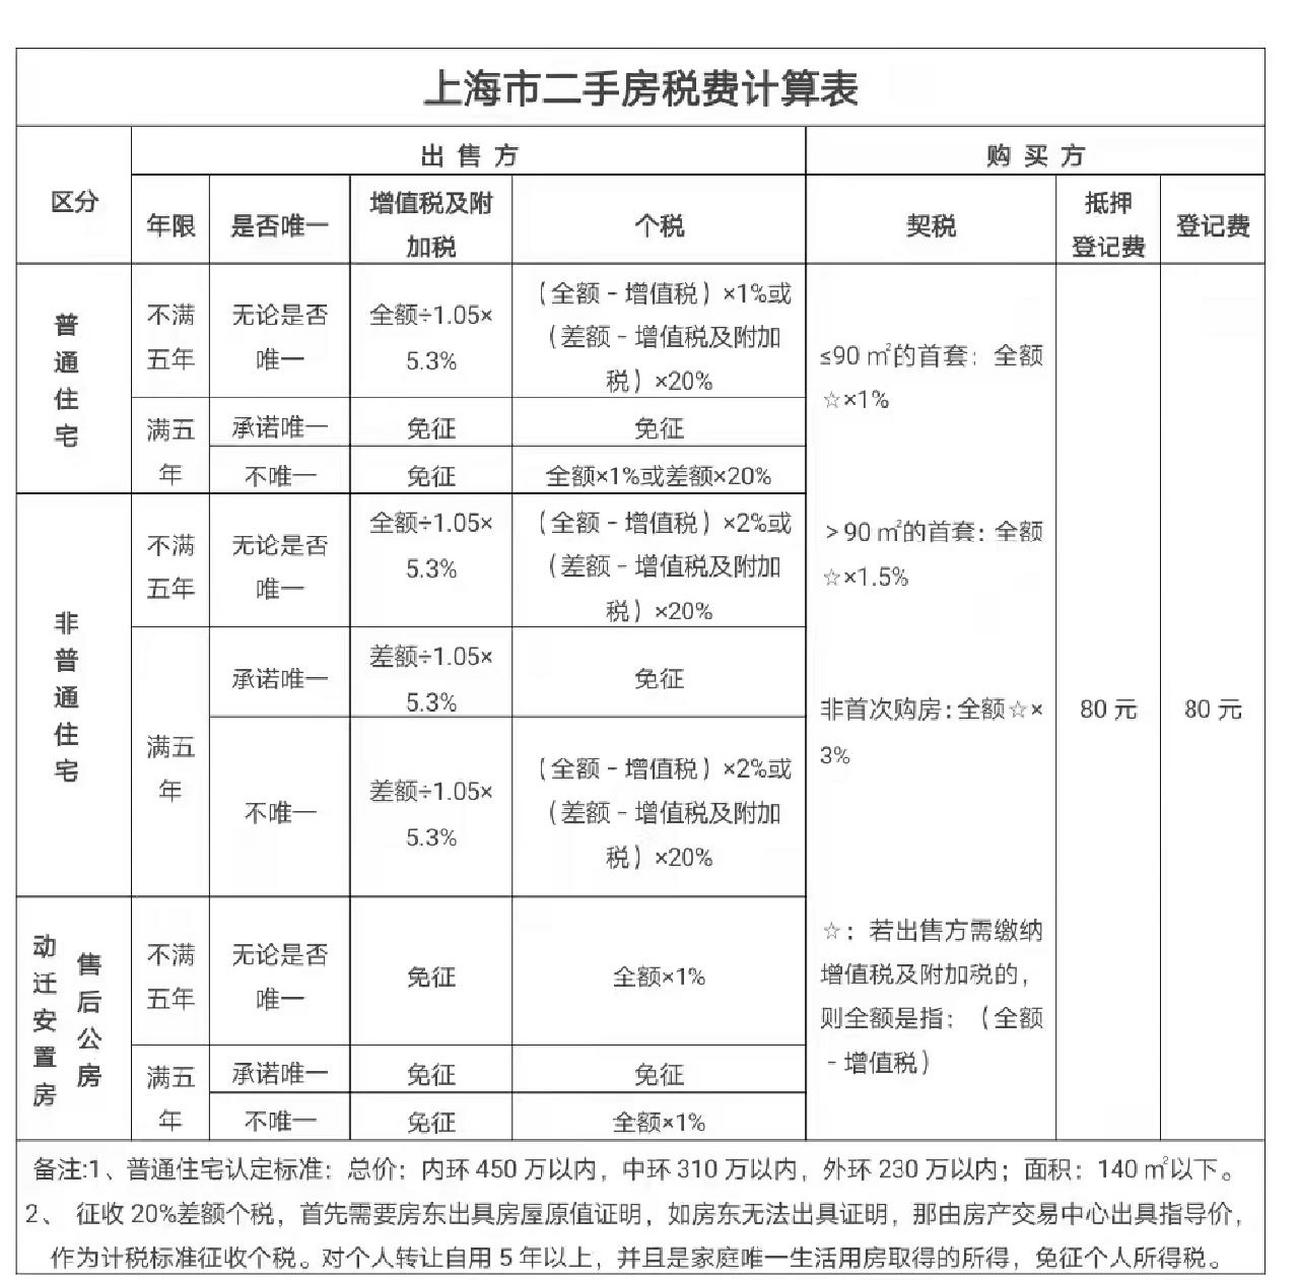 上海二手房税费计算表  上海二手房税费计算表 备注: 1,普通住宅认定